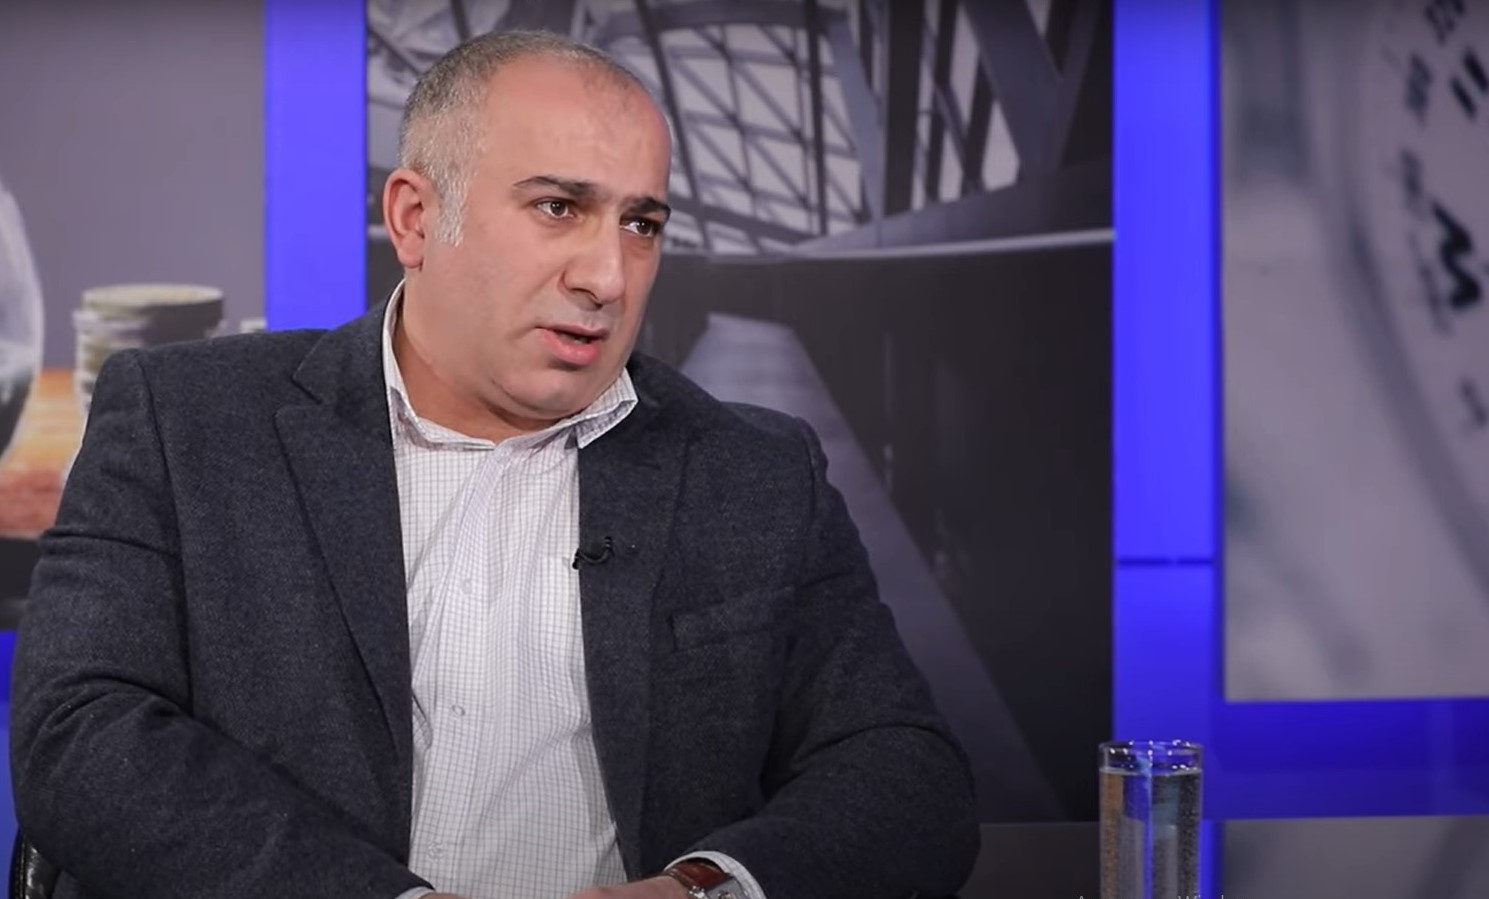 Ален Гевондян: Запад играет против России не только Украиной, но и Арменией